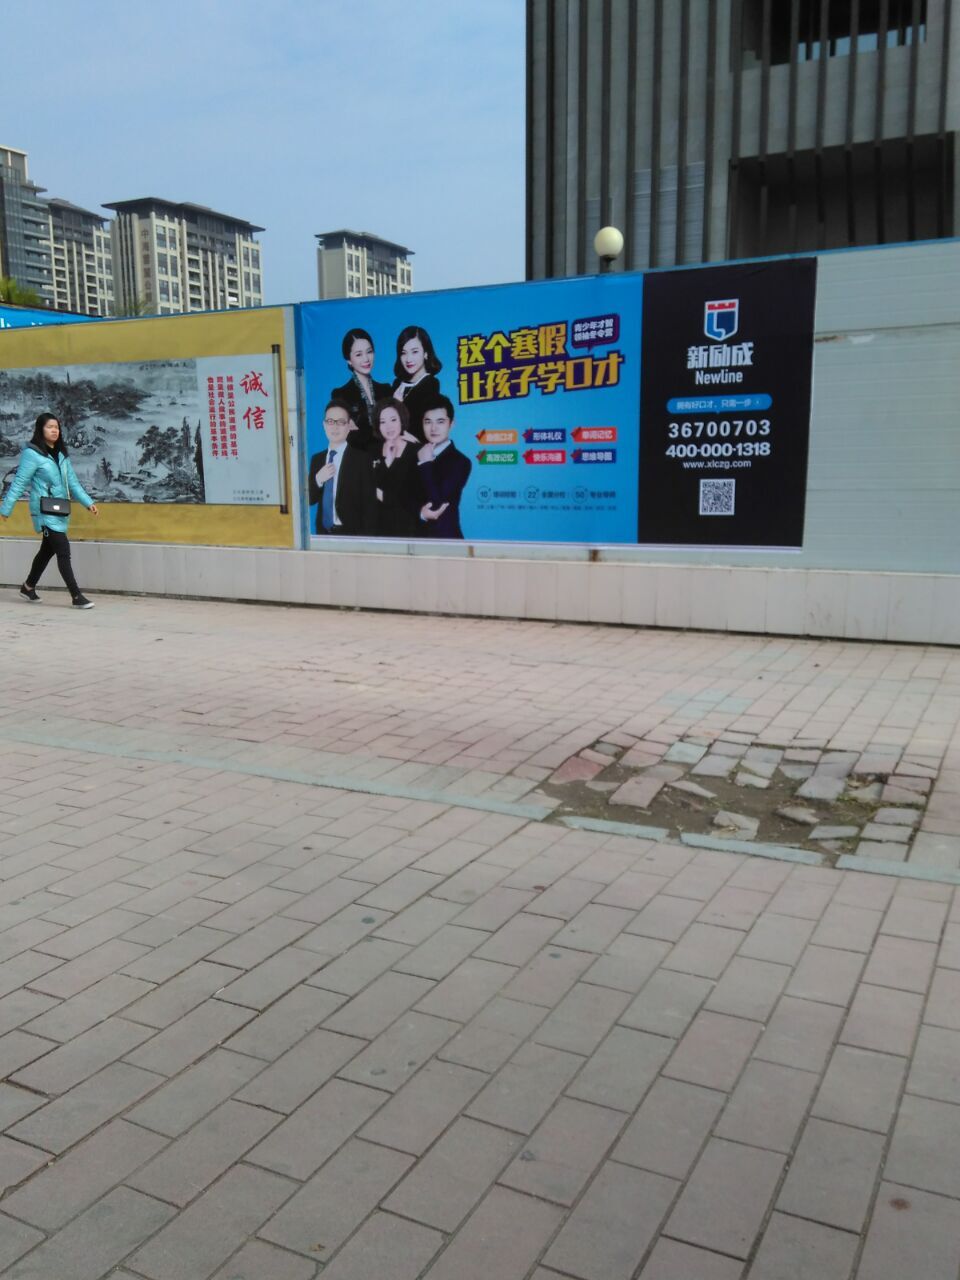 供应广州广告媒体发布围墙广告发布公司